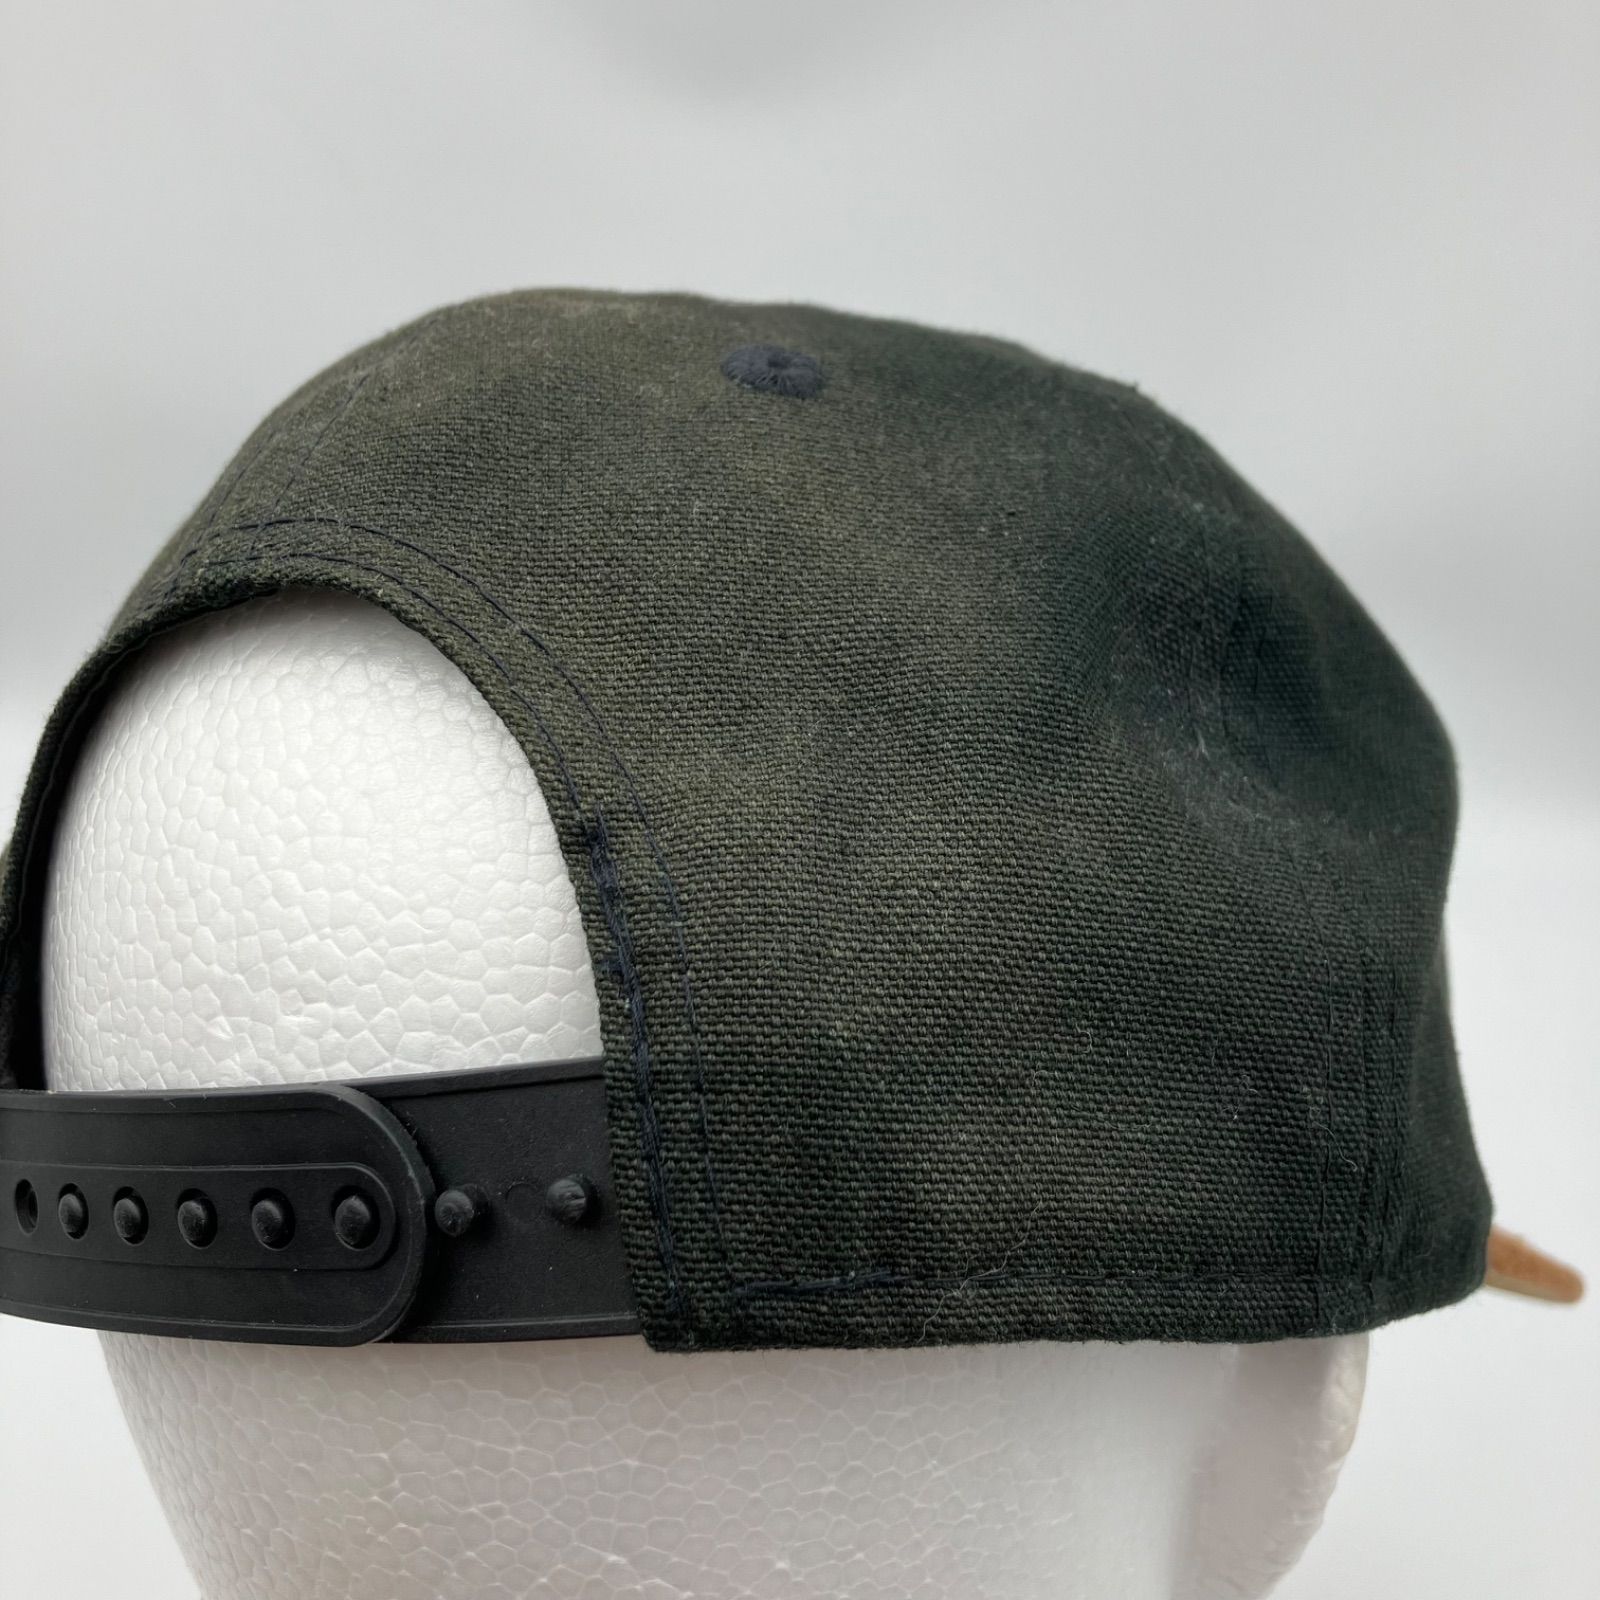 NEW ERA ニューエラ ロゴ キャップ 帽子 バイカラー ブラック ブラウン 黒 スナップバック メンズ SG149-27